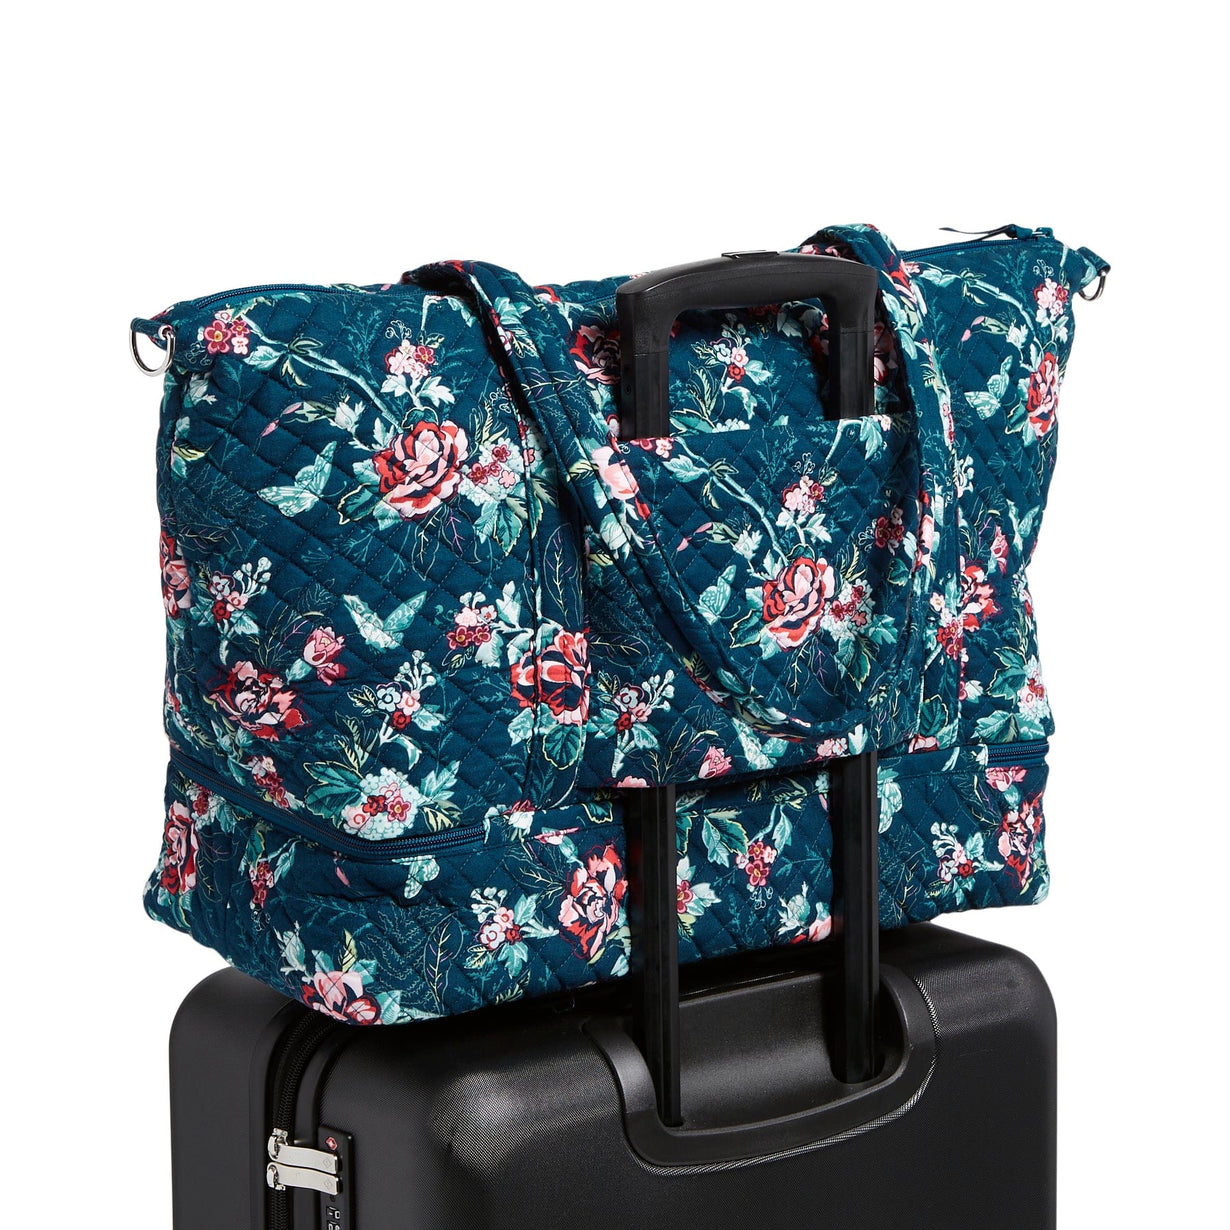 Vera Bradley Vera Bradley Deluxe Tote Travel Bag, Hope Blooms-Recycled 